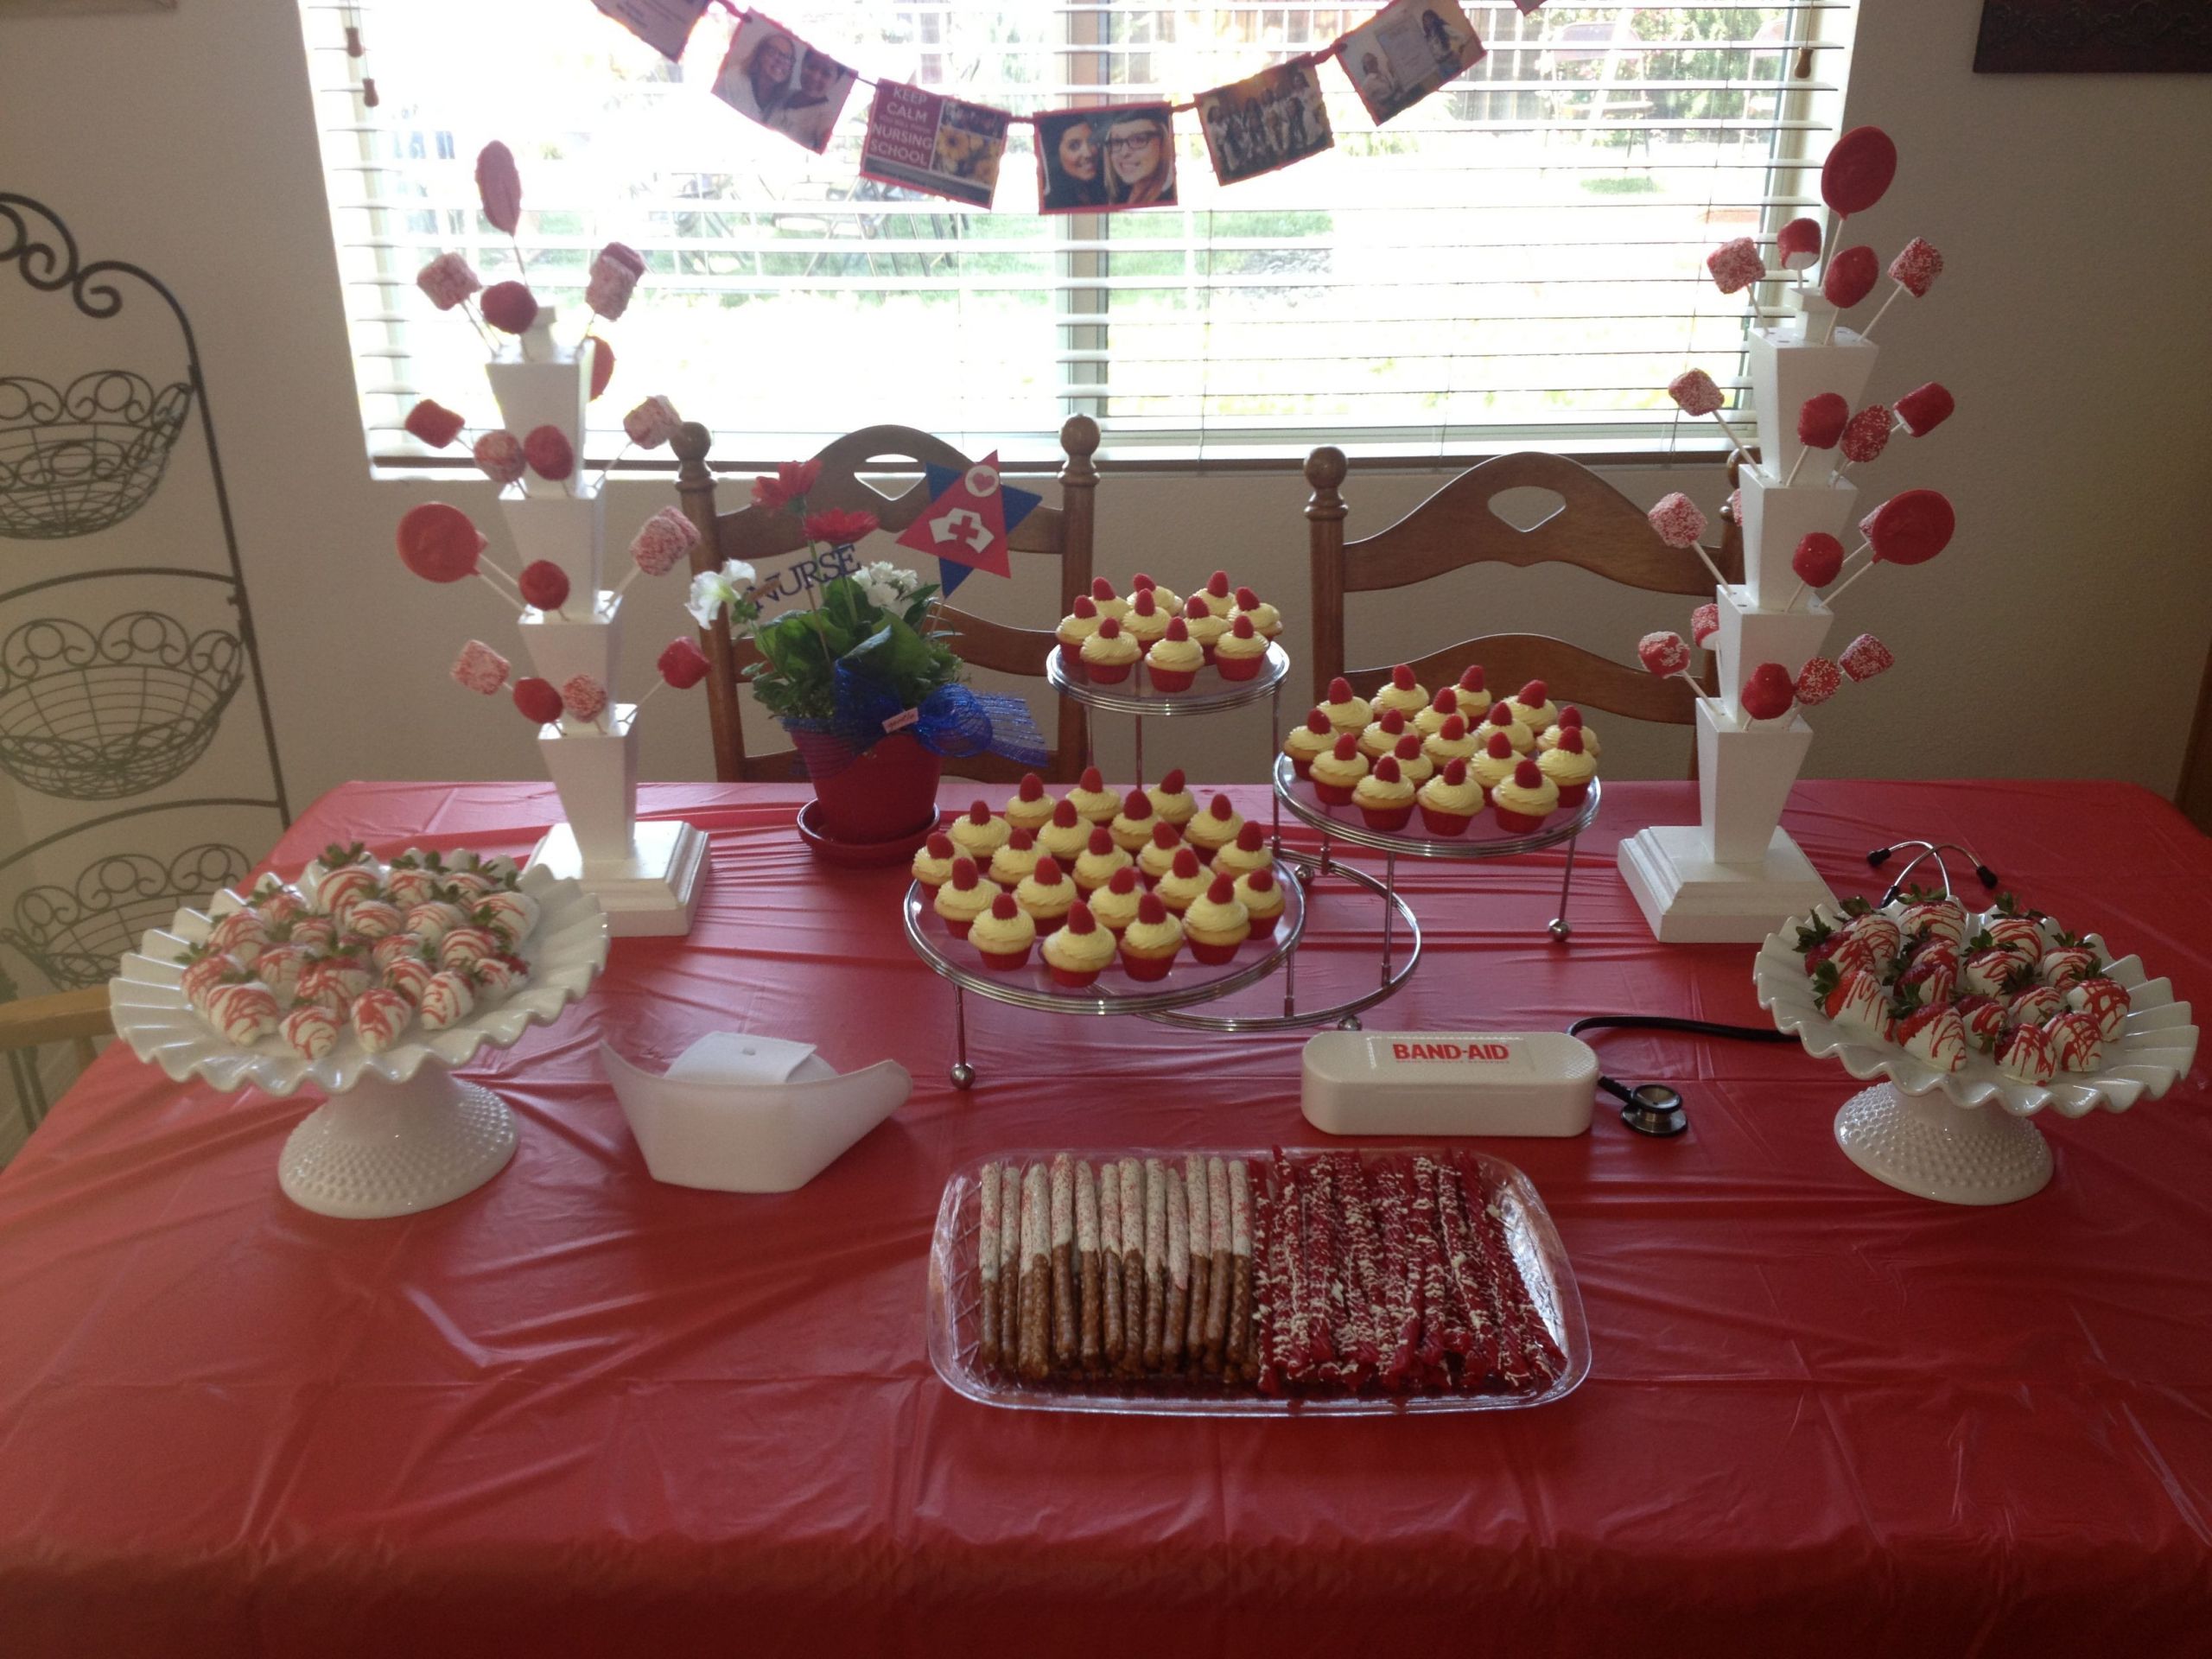 Lpn Graduation Party Ideas
 Dessert table for nursing graduation party